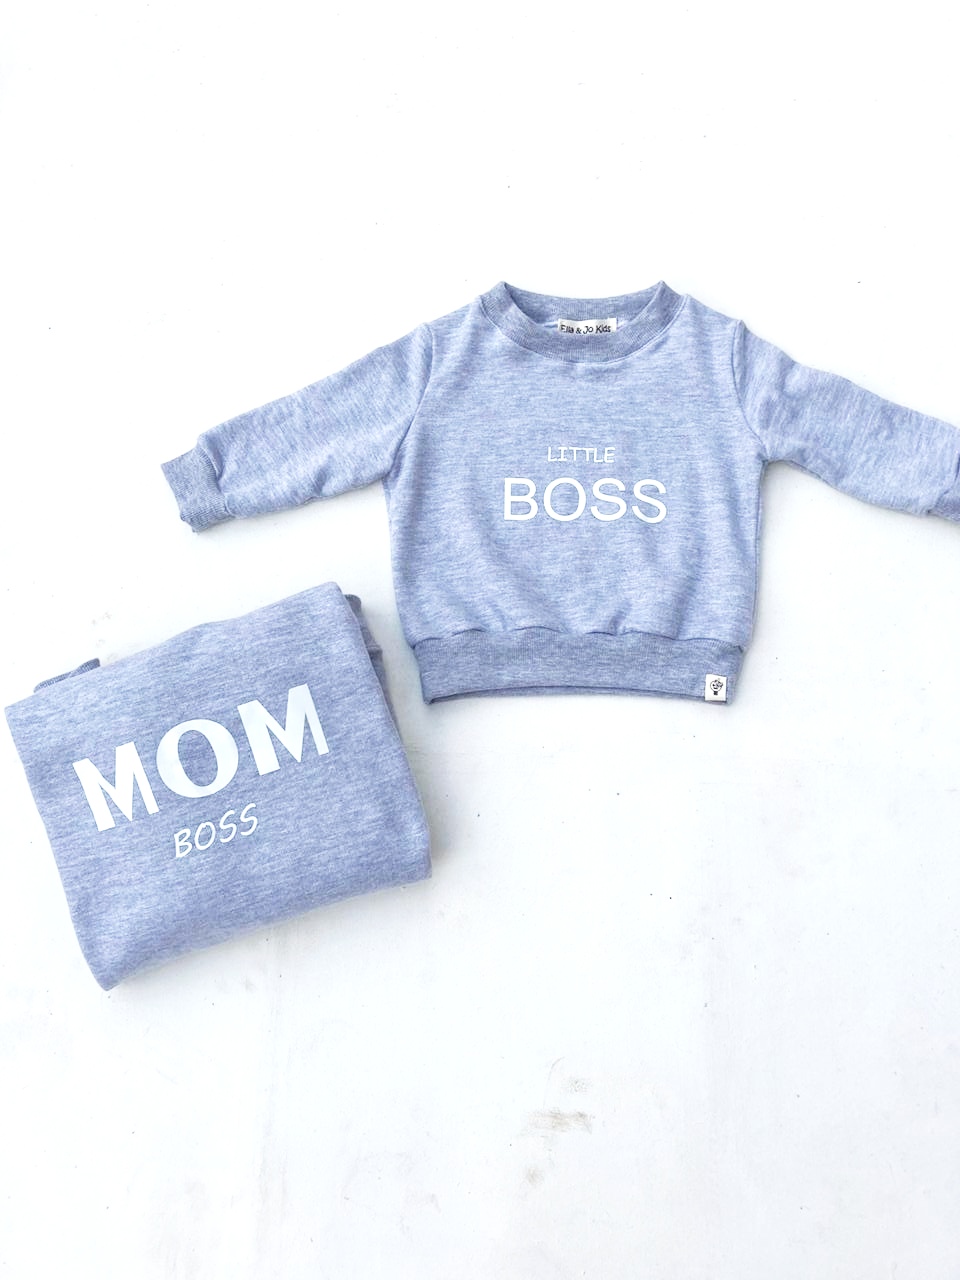 Mom Boss/Little Boss  Sweatshirt Set